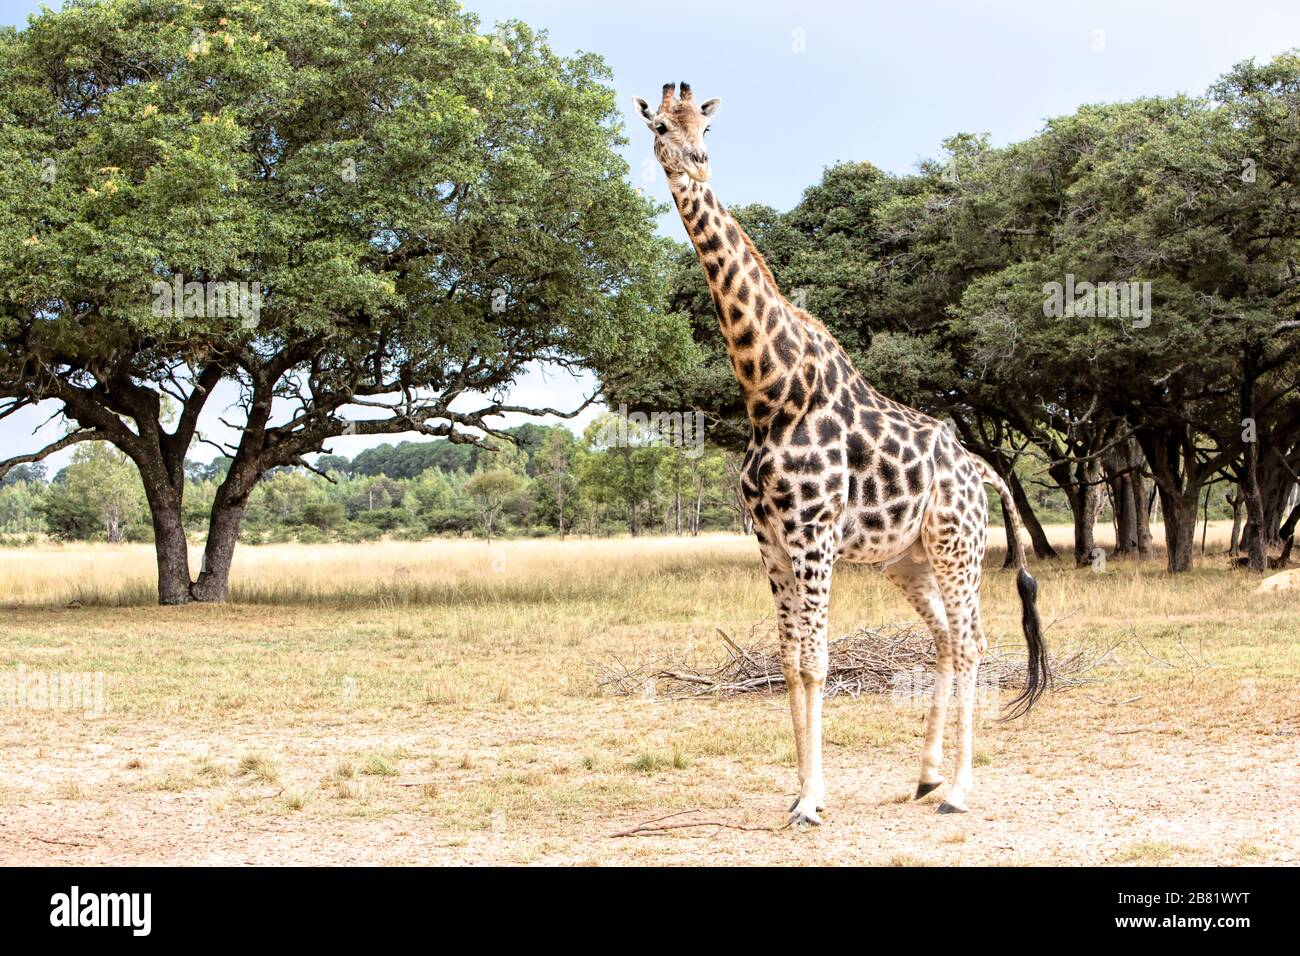 Relaxed giraffe on the Zimbabwean savanna Stock Photo